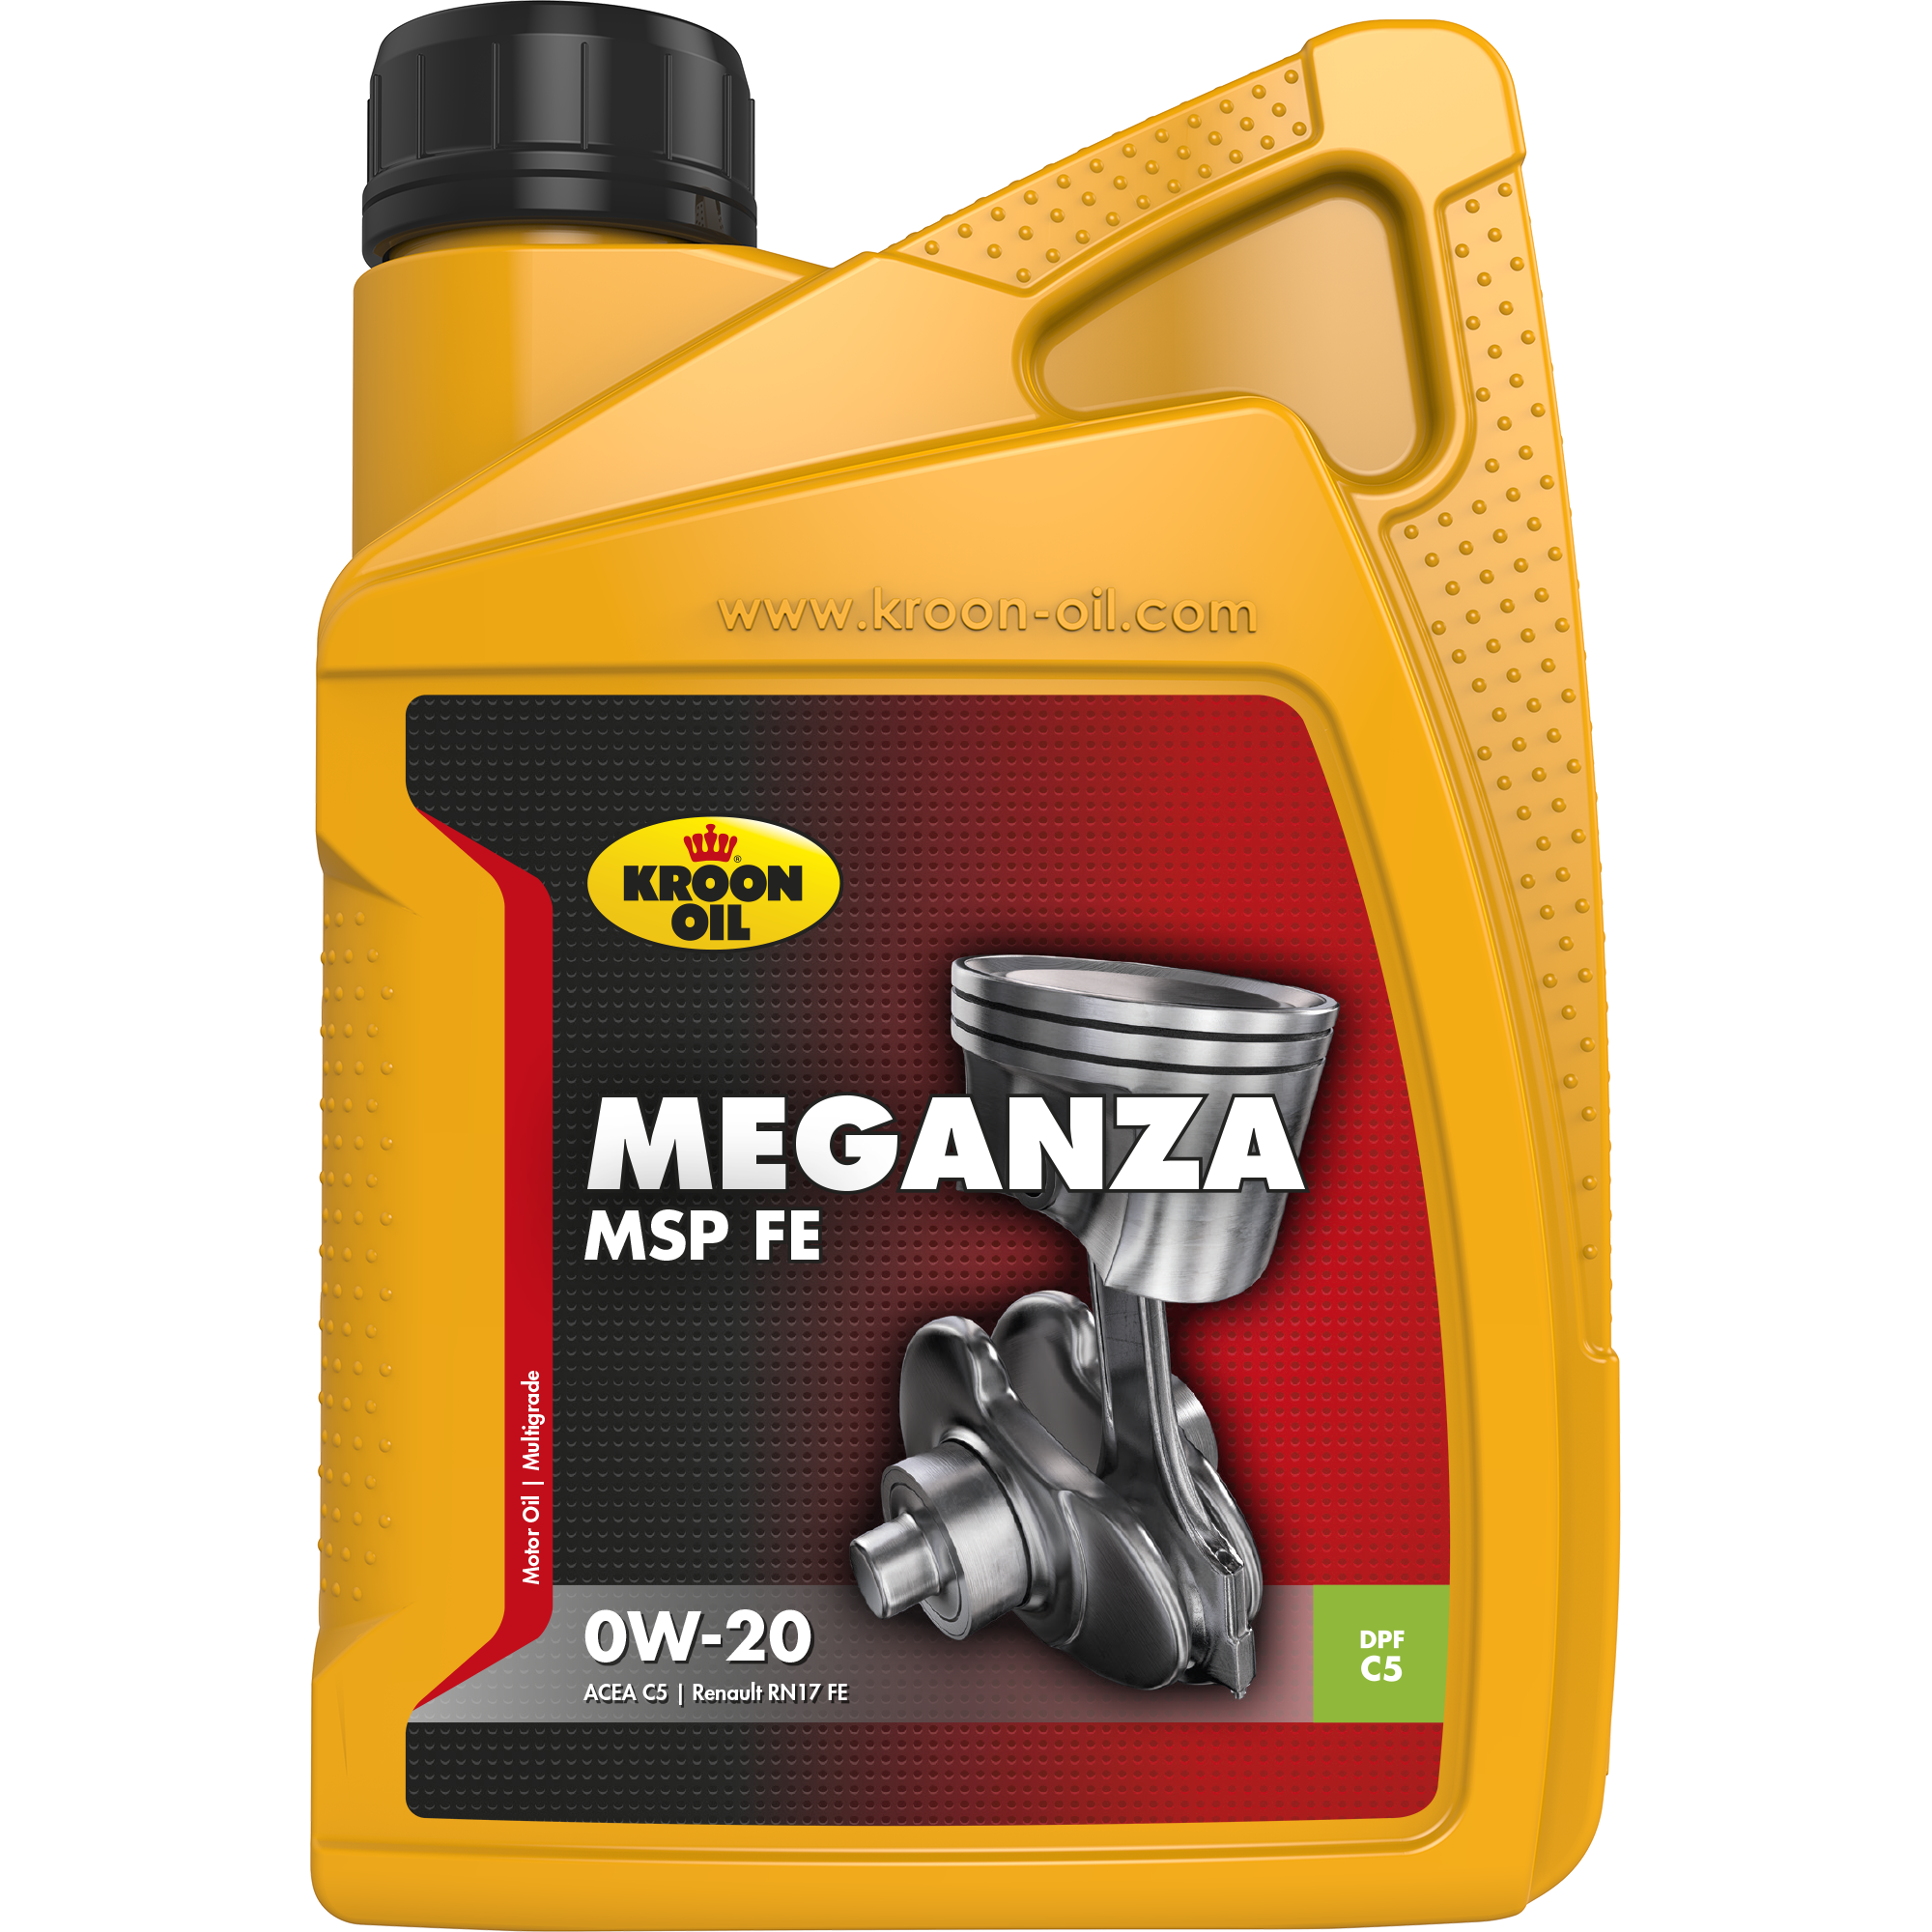 Kroon-Oil Meganza MSP FE 0W-20, 1 lt